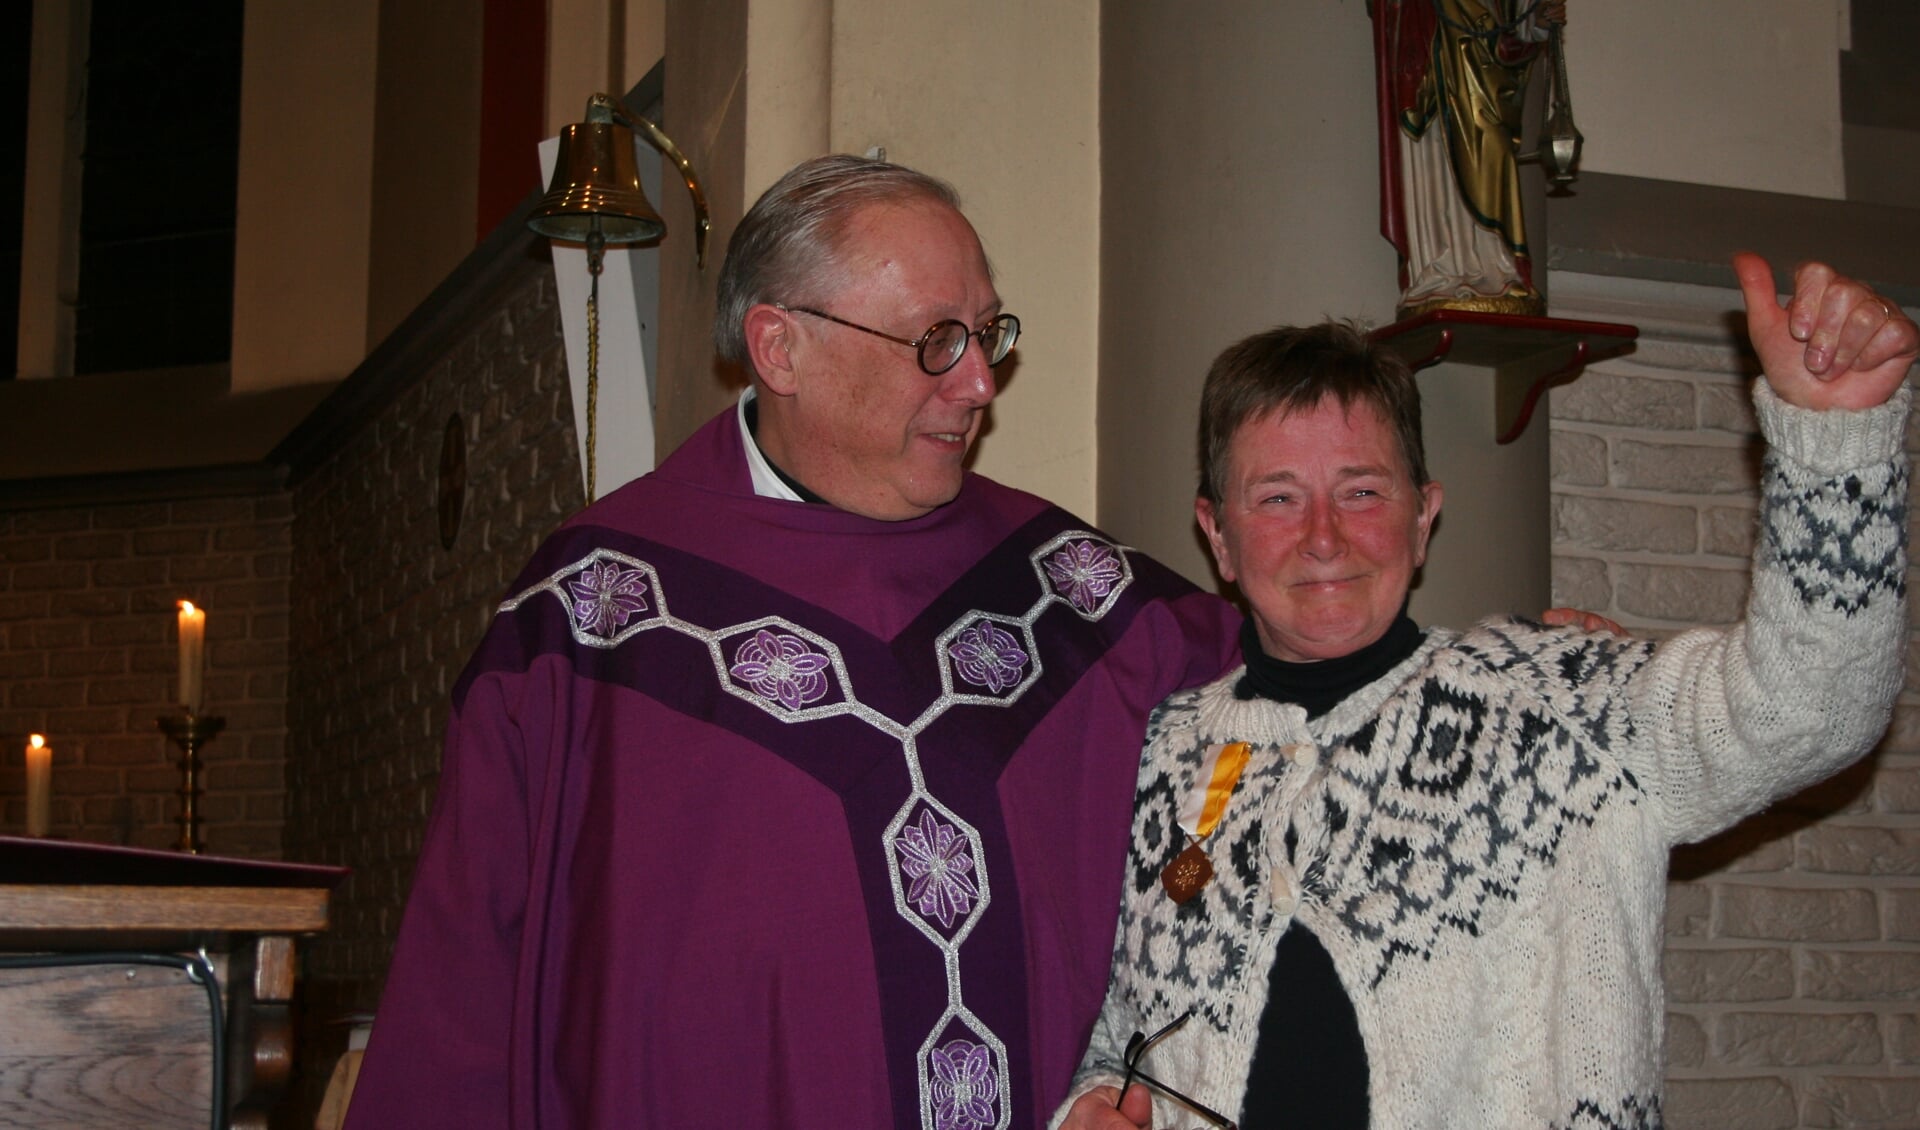 Uit handen van pastoor Harry Scheve ontving Margriet te Morsche de pauselijke onderscheiding de Pro Ecclesia et Pontifice. Foto: Gemma van der Linde